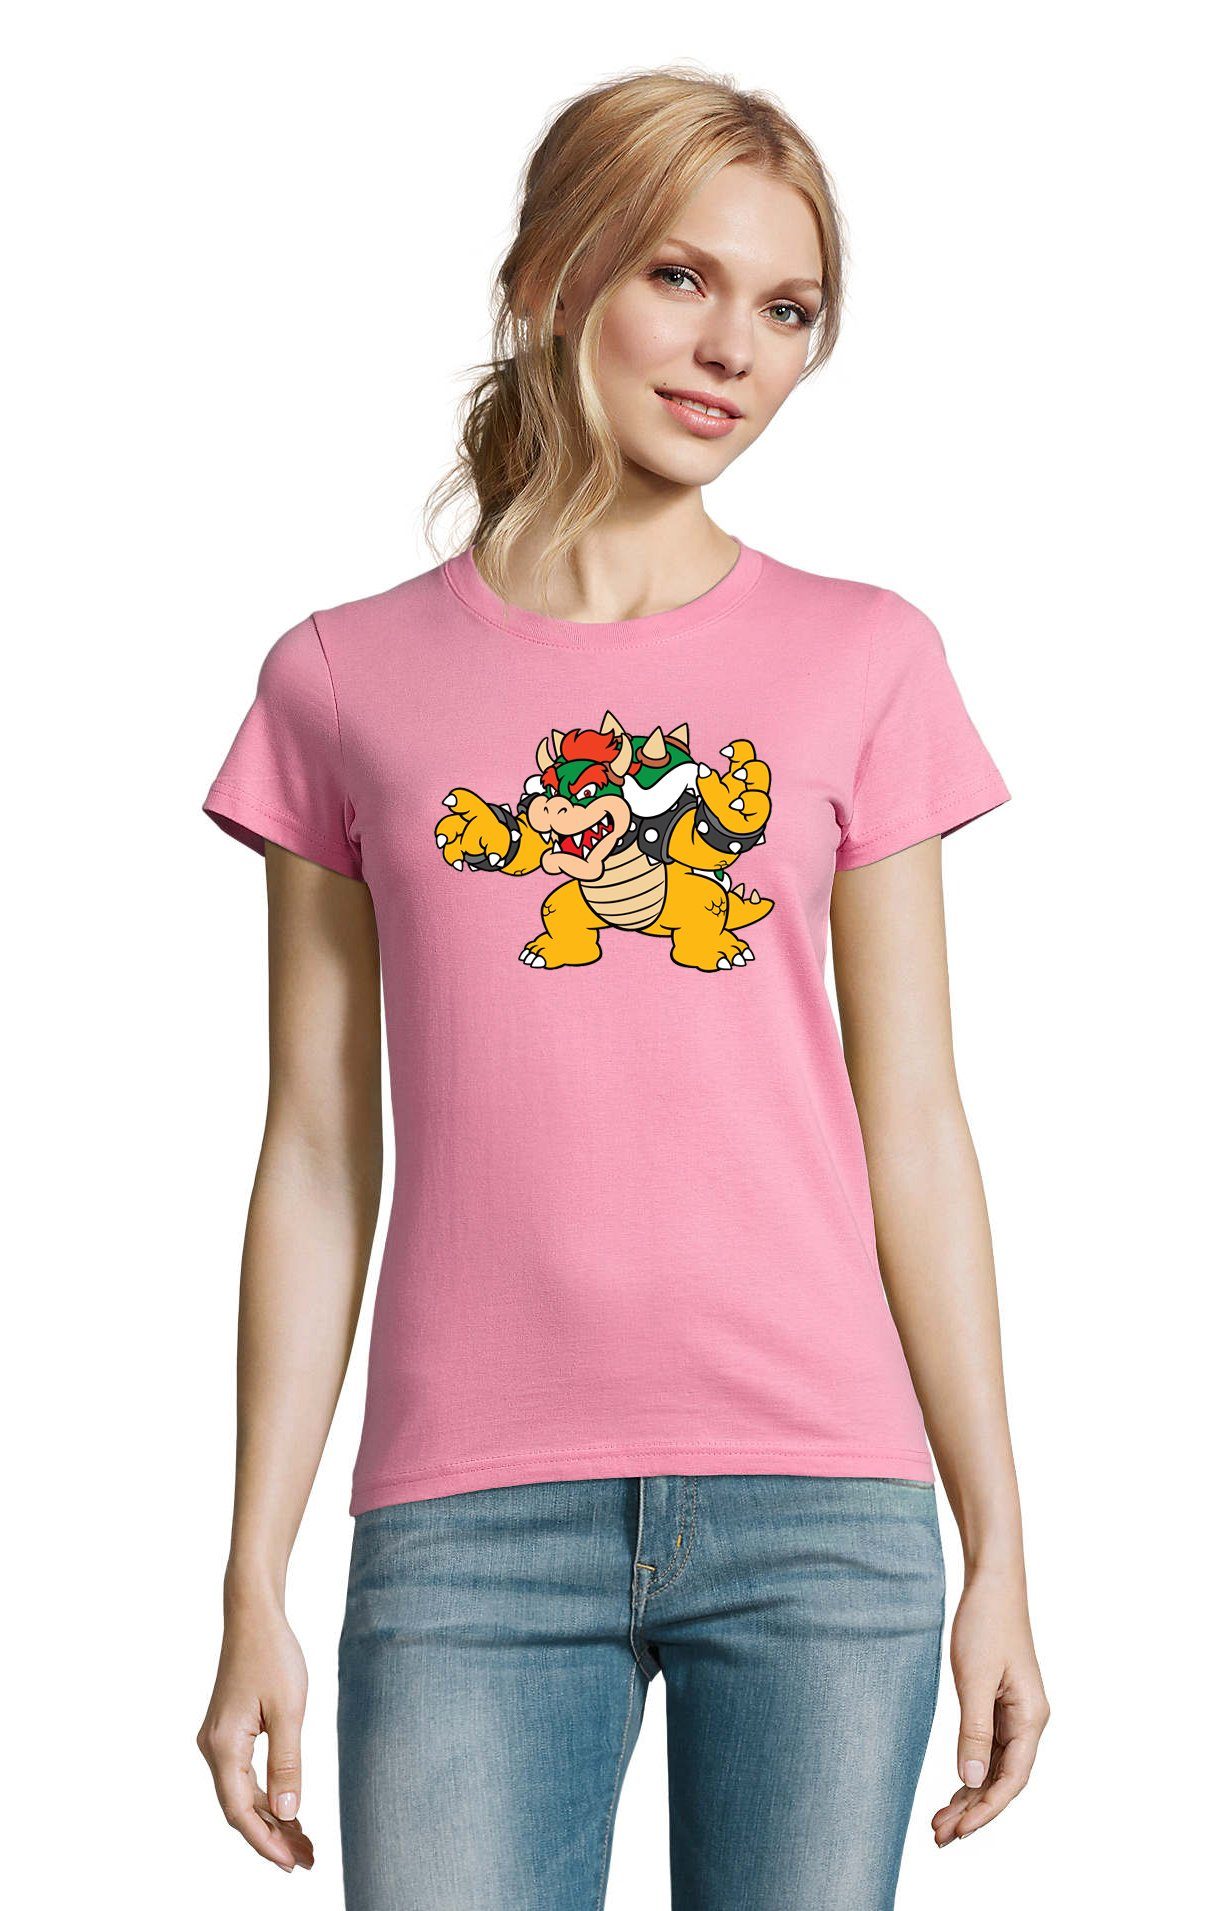 Blondie & Brownie T-Shirt Damen Luigi Bowser Gamer Rosa Gaming Mario Nintendo Game Konsole Yoshi